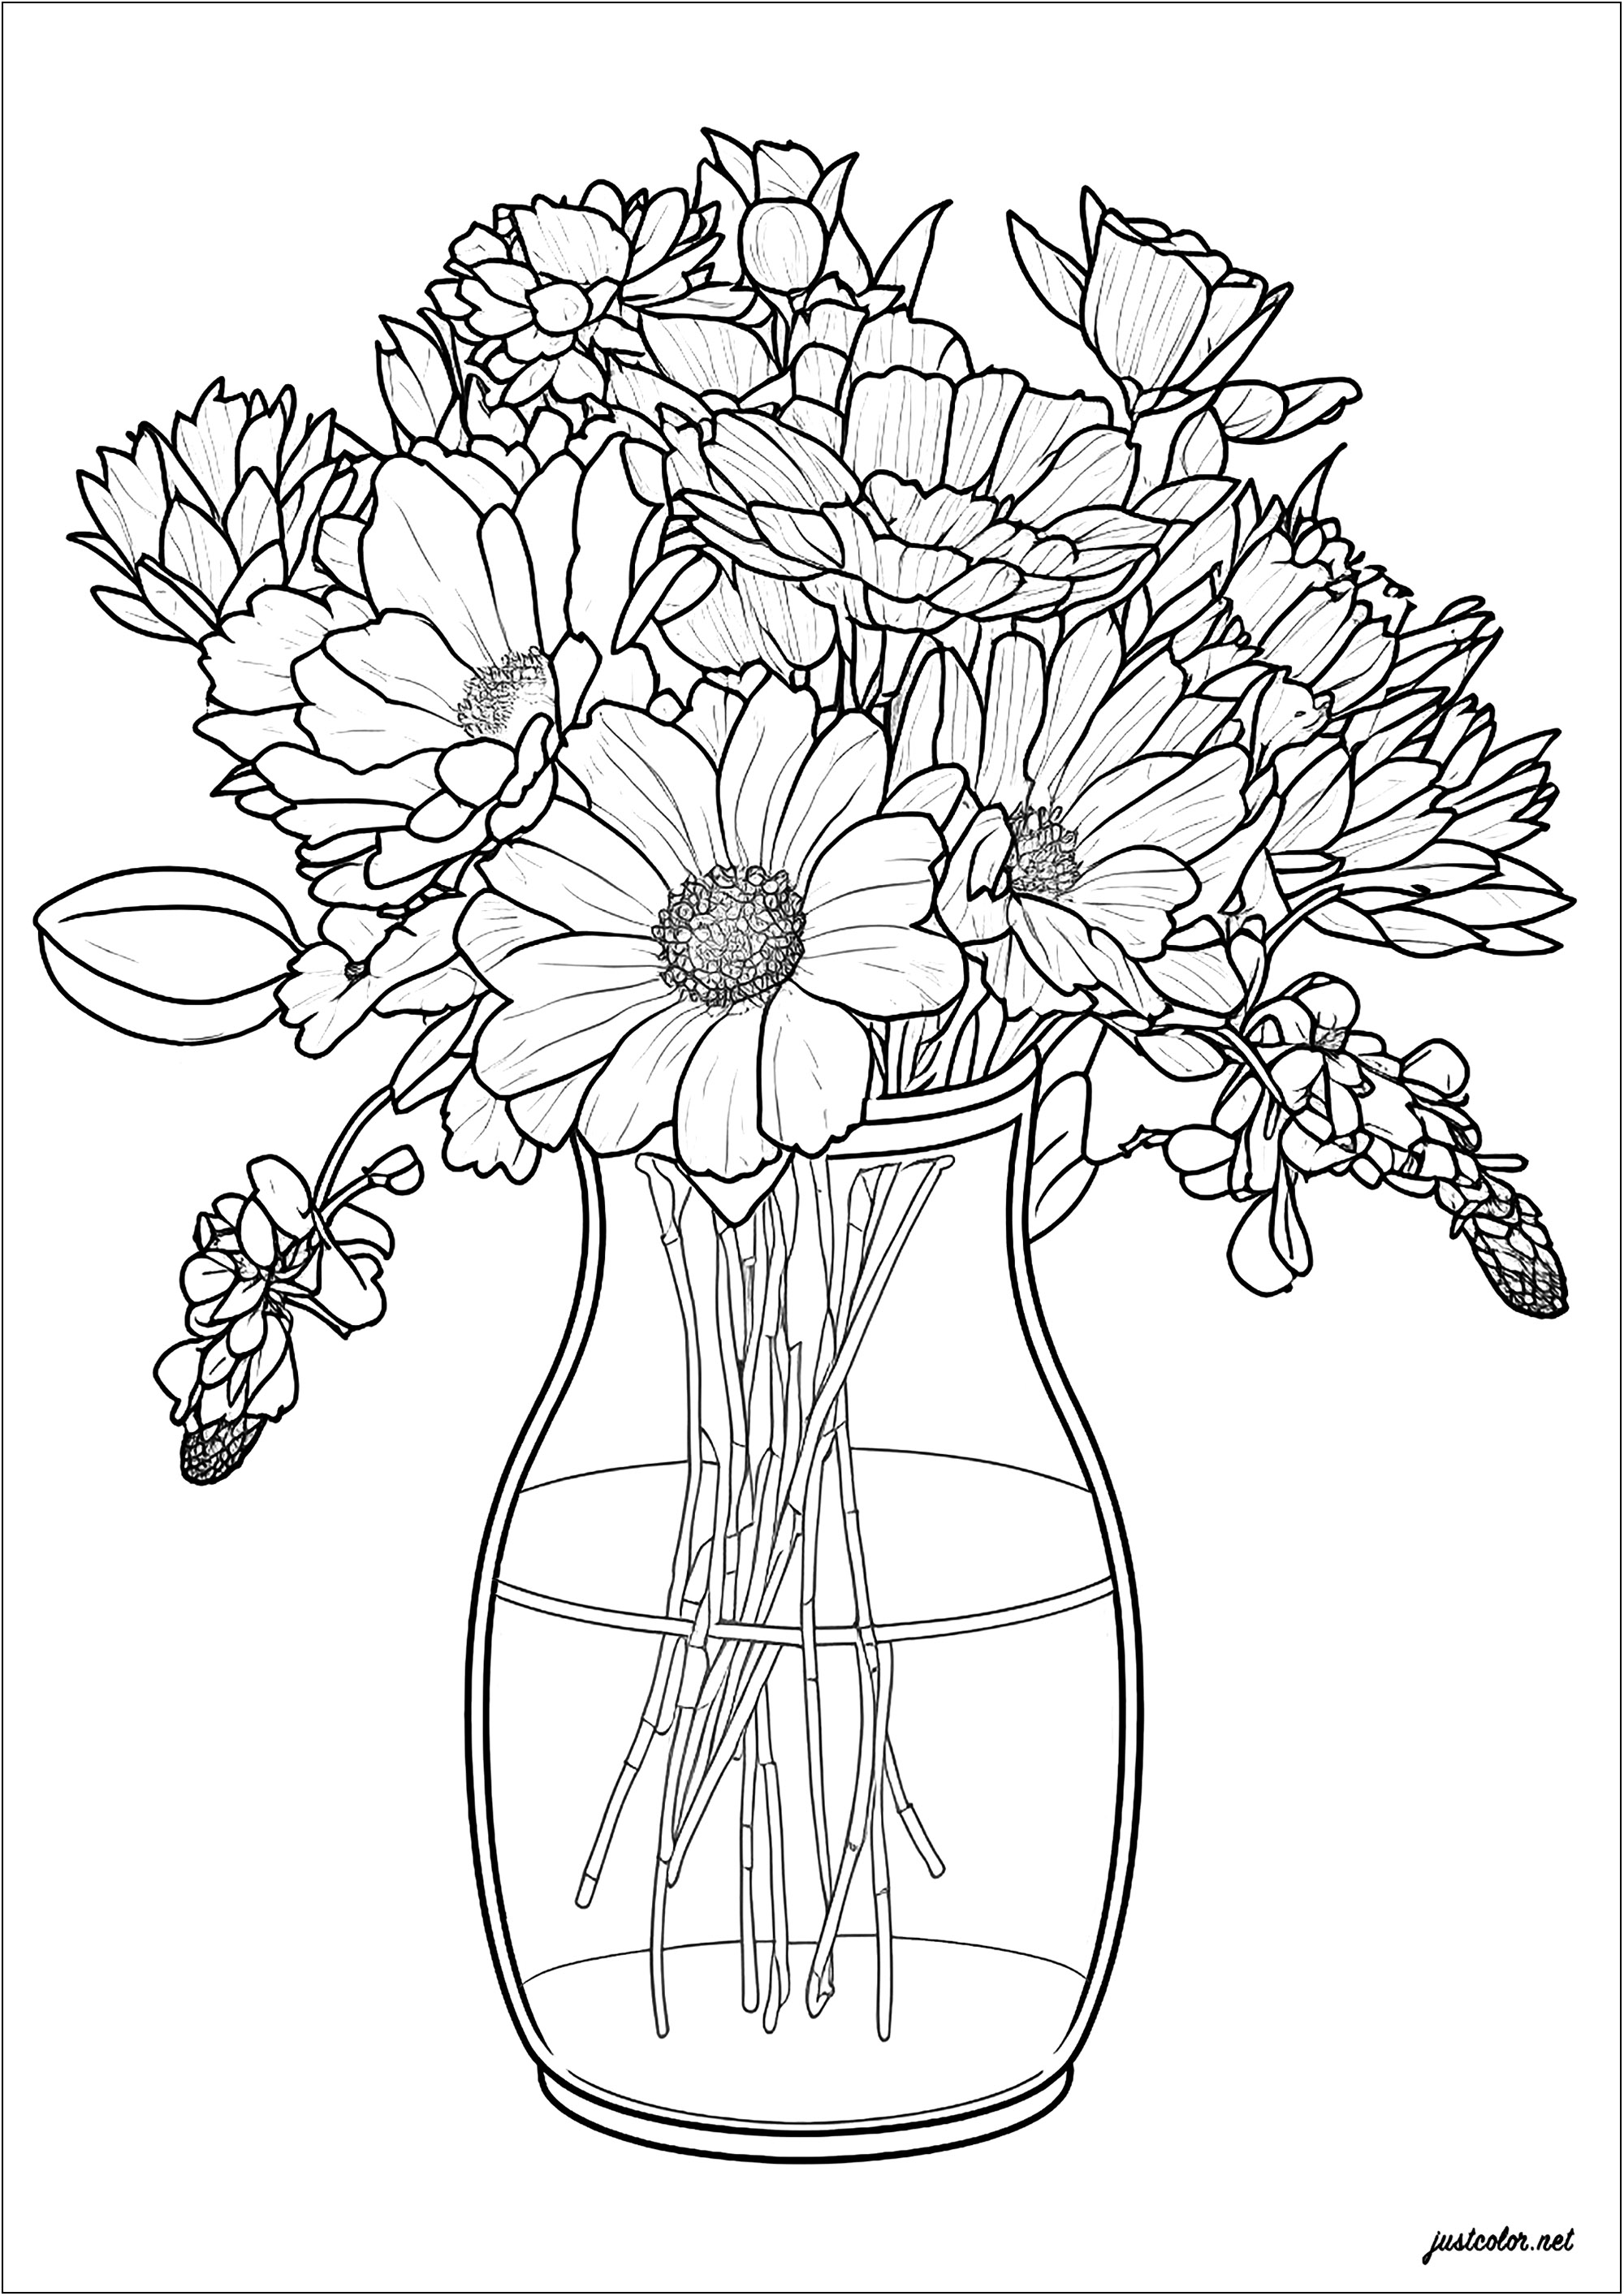 Vase und zarte Blumen. Ein hübsches Design mit feinen Linien, das schöne, elegant arrangierte Blumen in einer Glasvase zeigt. Eine hervorragende Möglichkeit, einen angenehmen Moment zu verbringen und etwas Einzigartiges und Schönes zu schaffen.